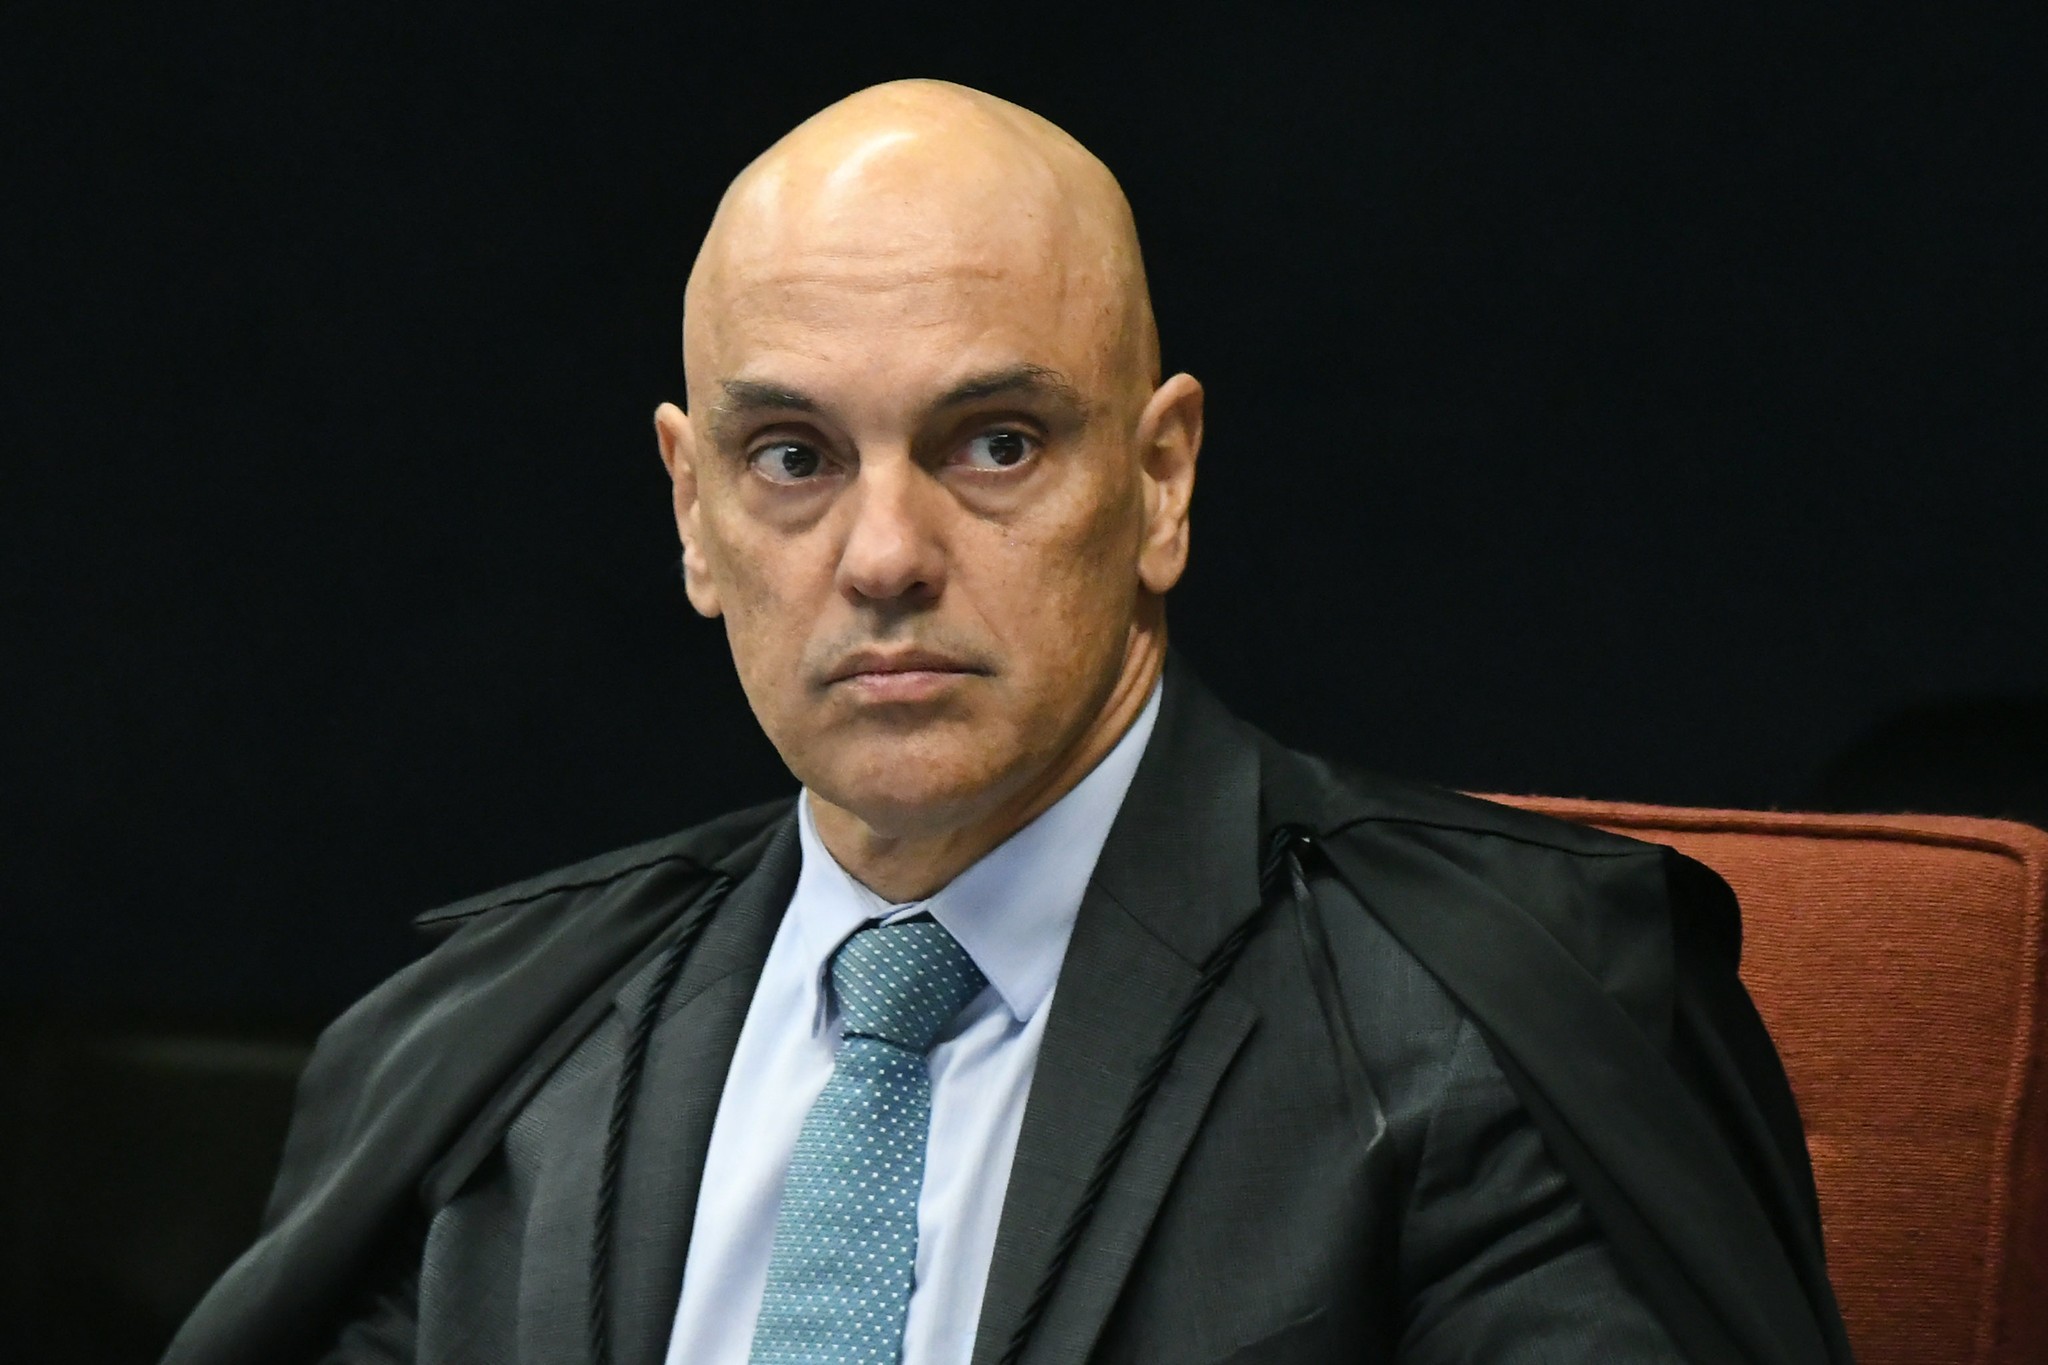 Confiança dos brasileiros nas urnas eletrônicas ‘nunca se abalou’, diz Moraes